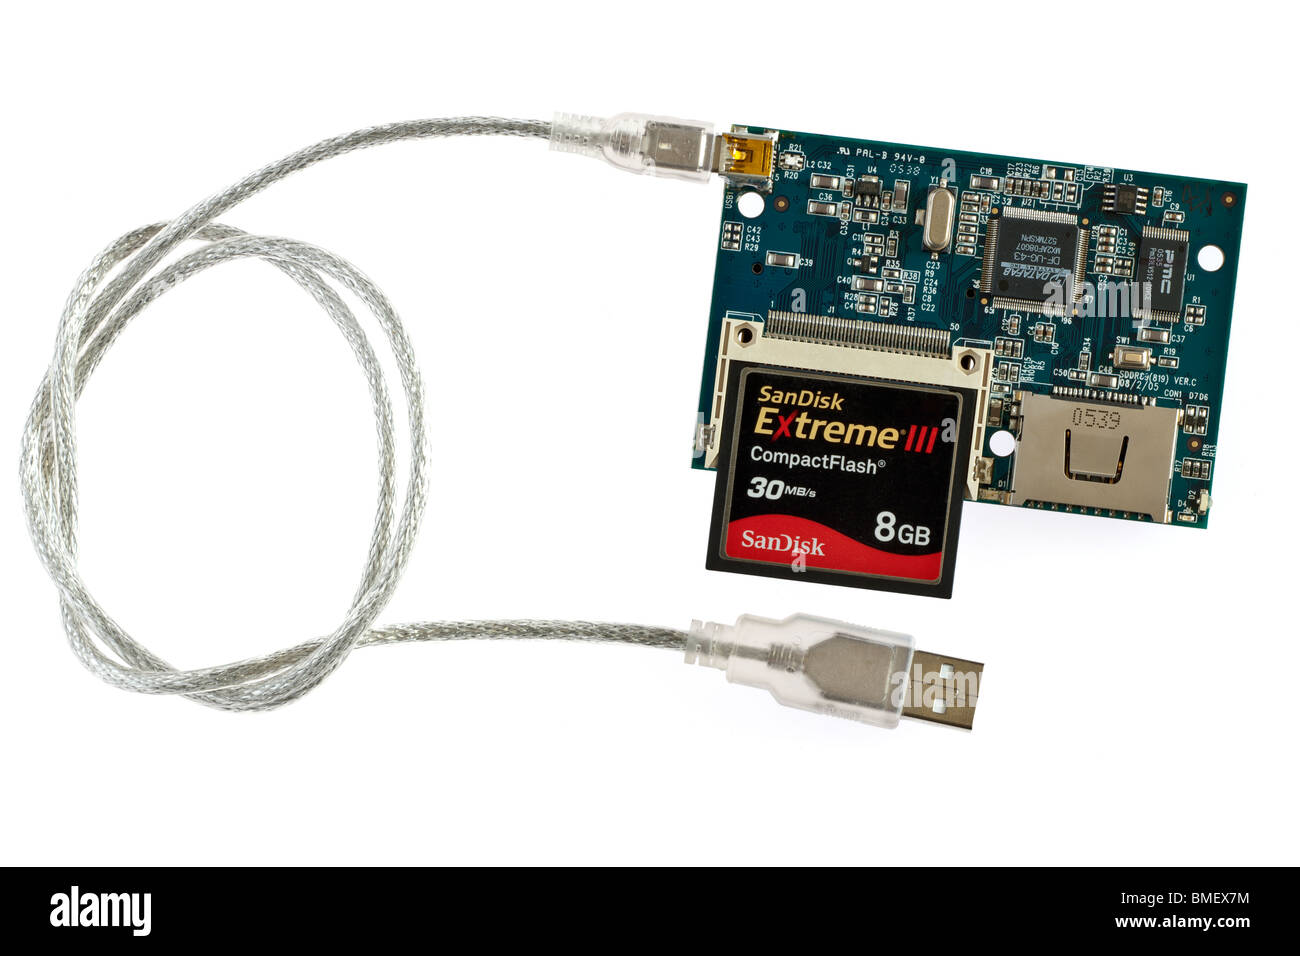 Interno della scheda pcb lavorazioni e una Sandisk 8 GB EXTREME 3 scheda compact flash su un multi card reader con 2 USB per cavo mini USB. Foto Stock